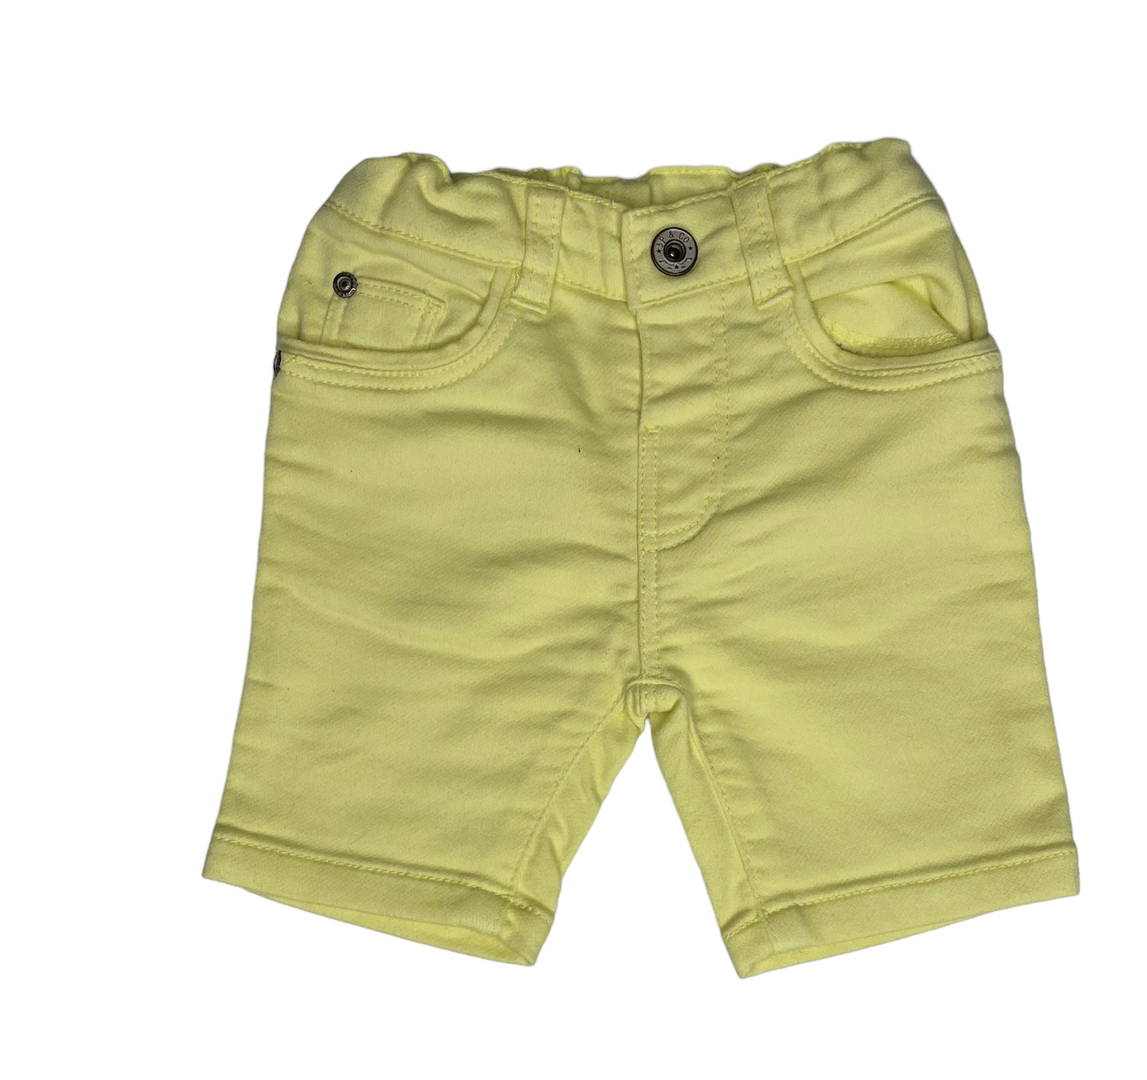 3 POMMES / Bermuda 3/6 mois - Bébé garçon 0-3 ans/Pantalons / Jeans /  Shorts - Les petits Crocod'îles